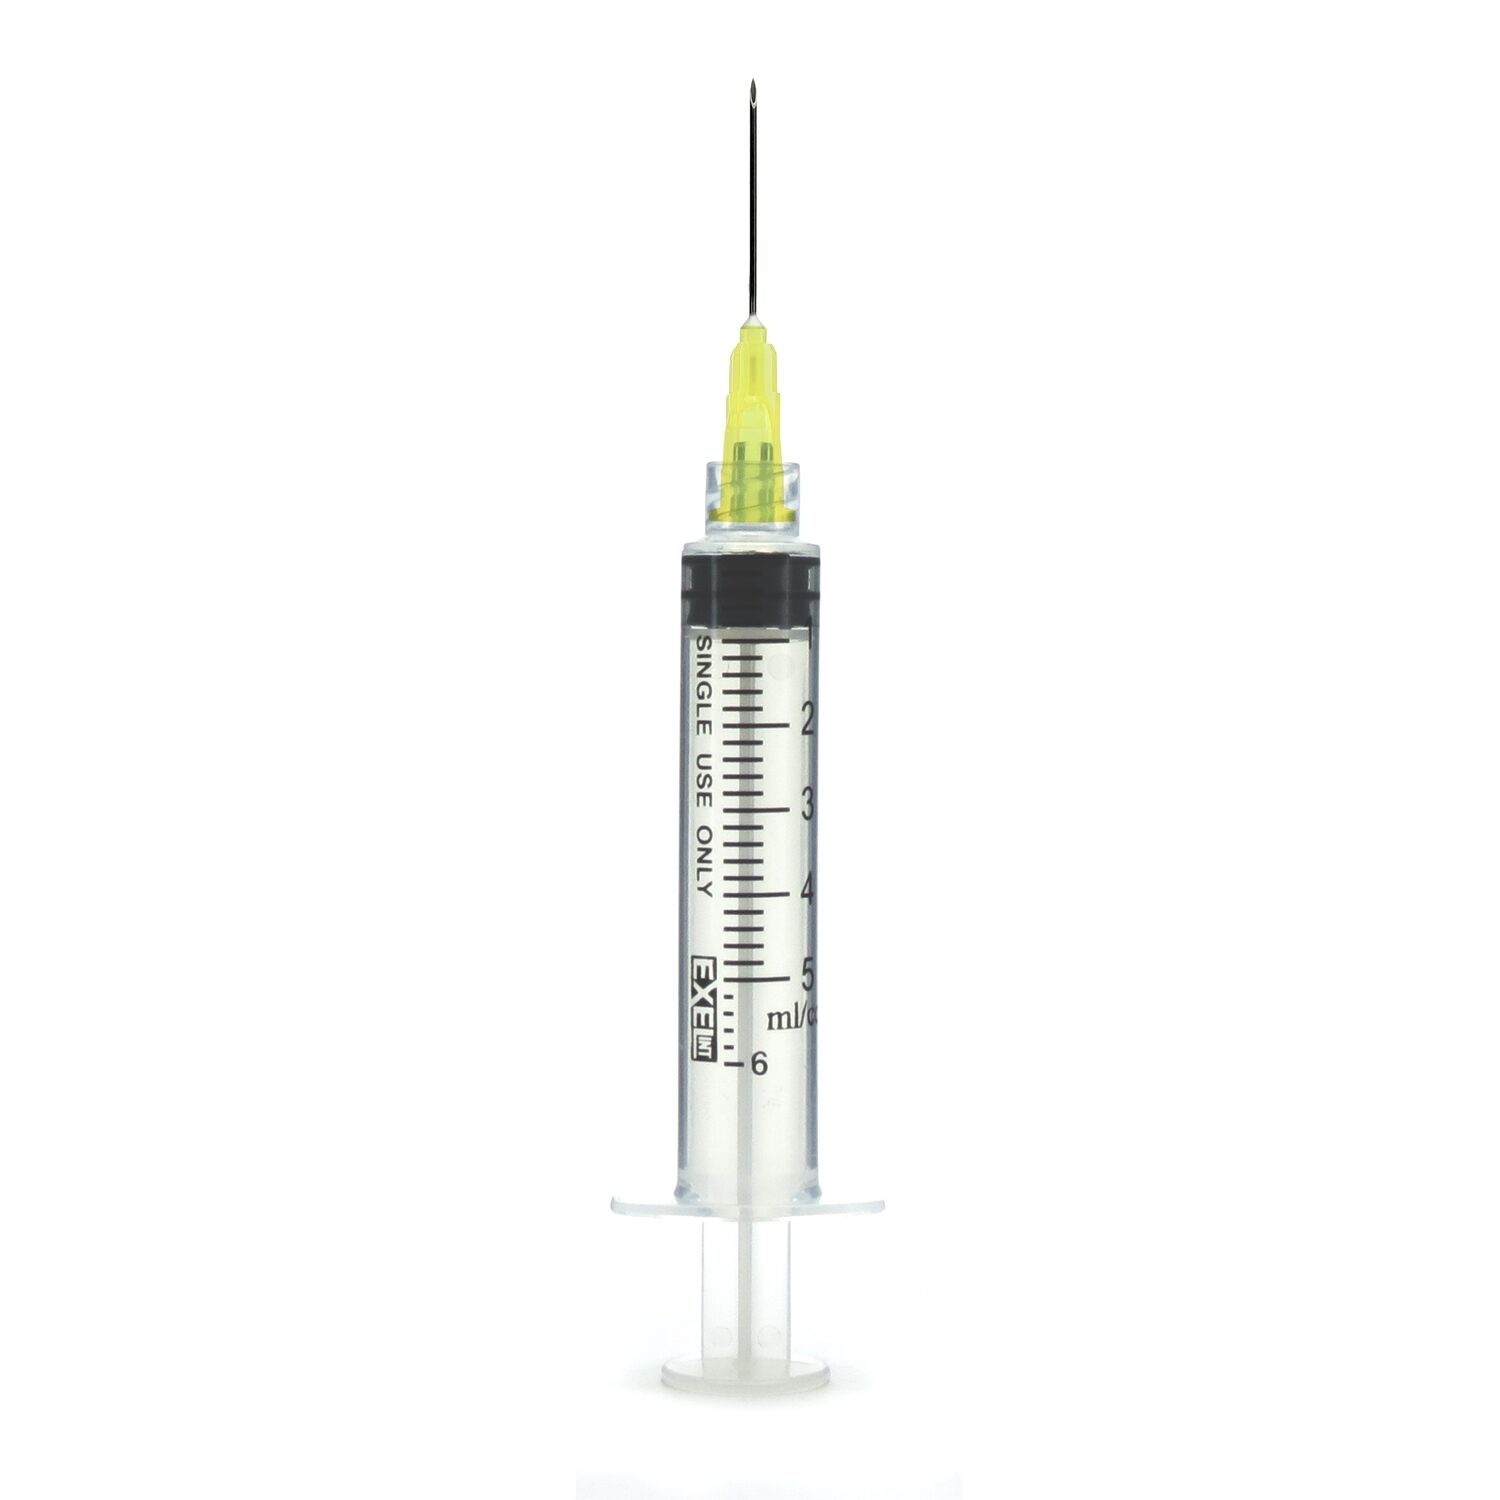 UnityCovid19  1CC Hypodermic Syringe Luer Lock with Needle